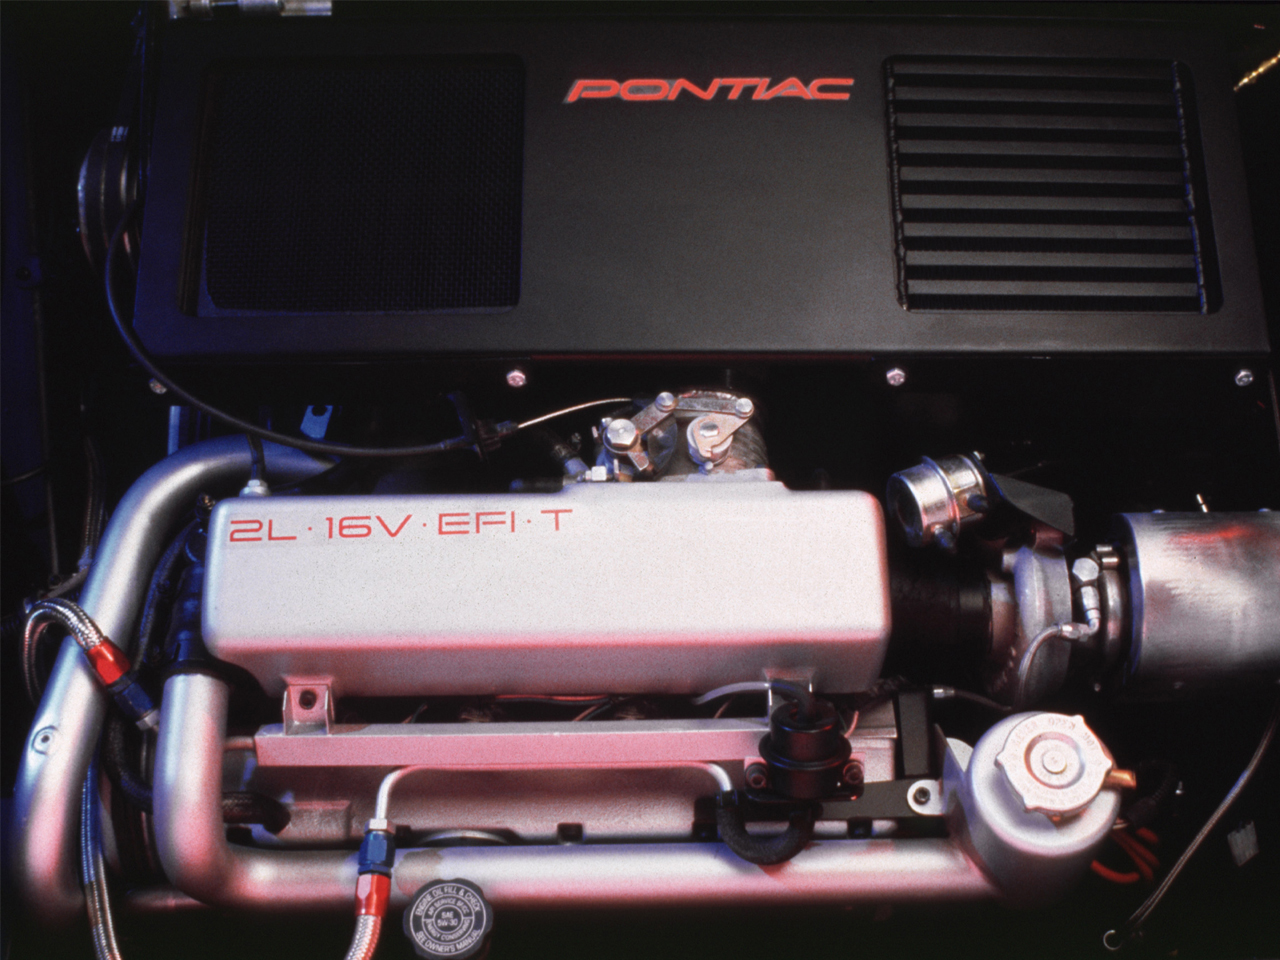 Pontiac Pursuit Concept, 1987 - Engine